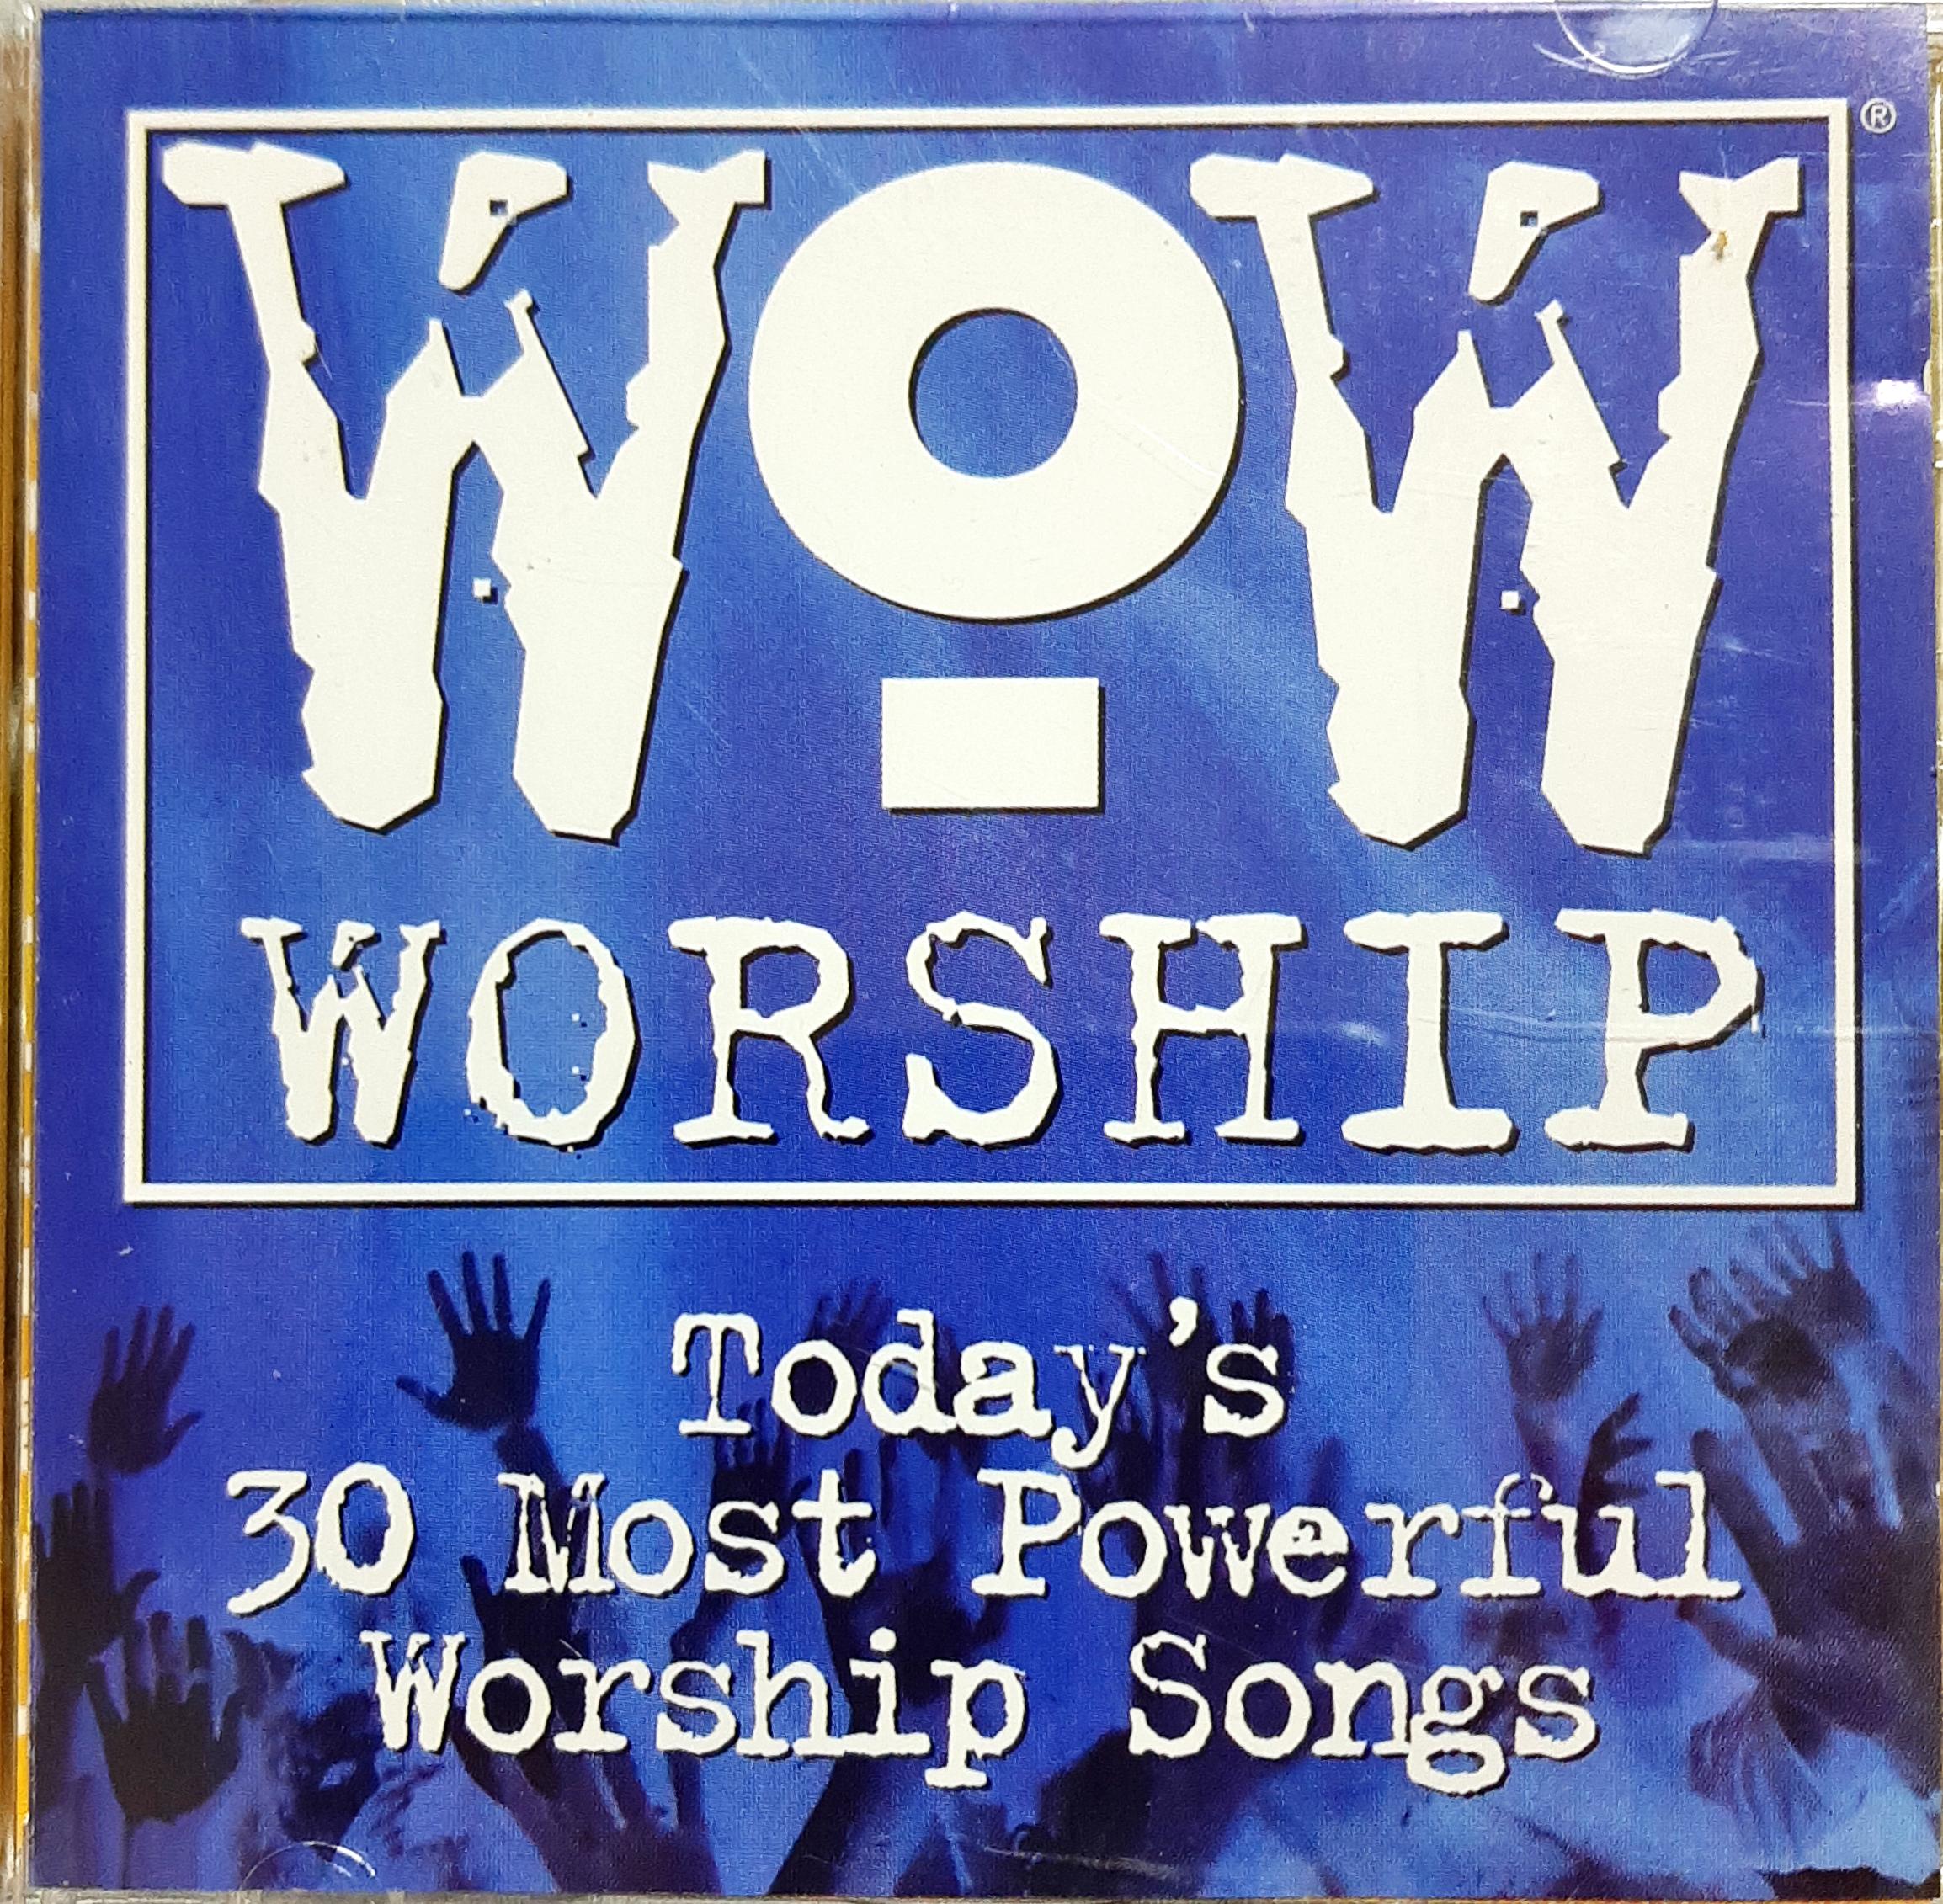 호산나ㆍ마라나타ㆍ빈야드 Worship Songs - Today's 30 Most Power Worship Songs